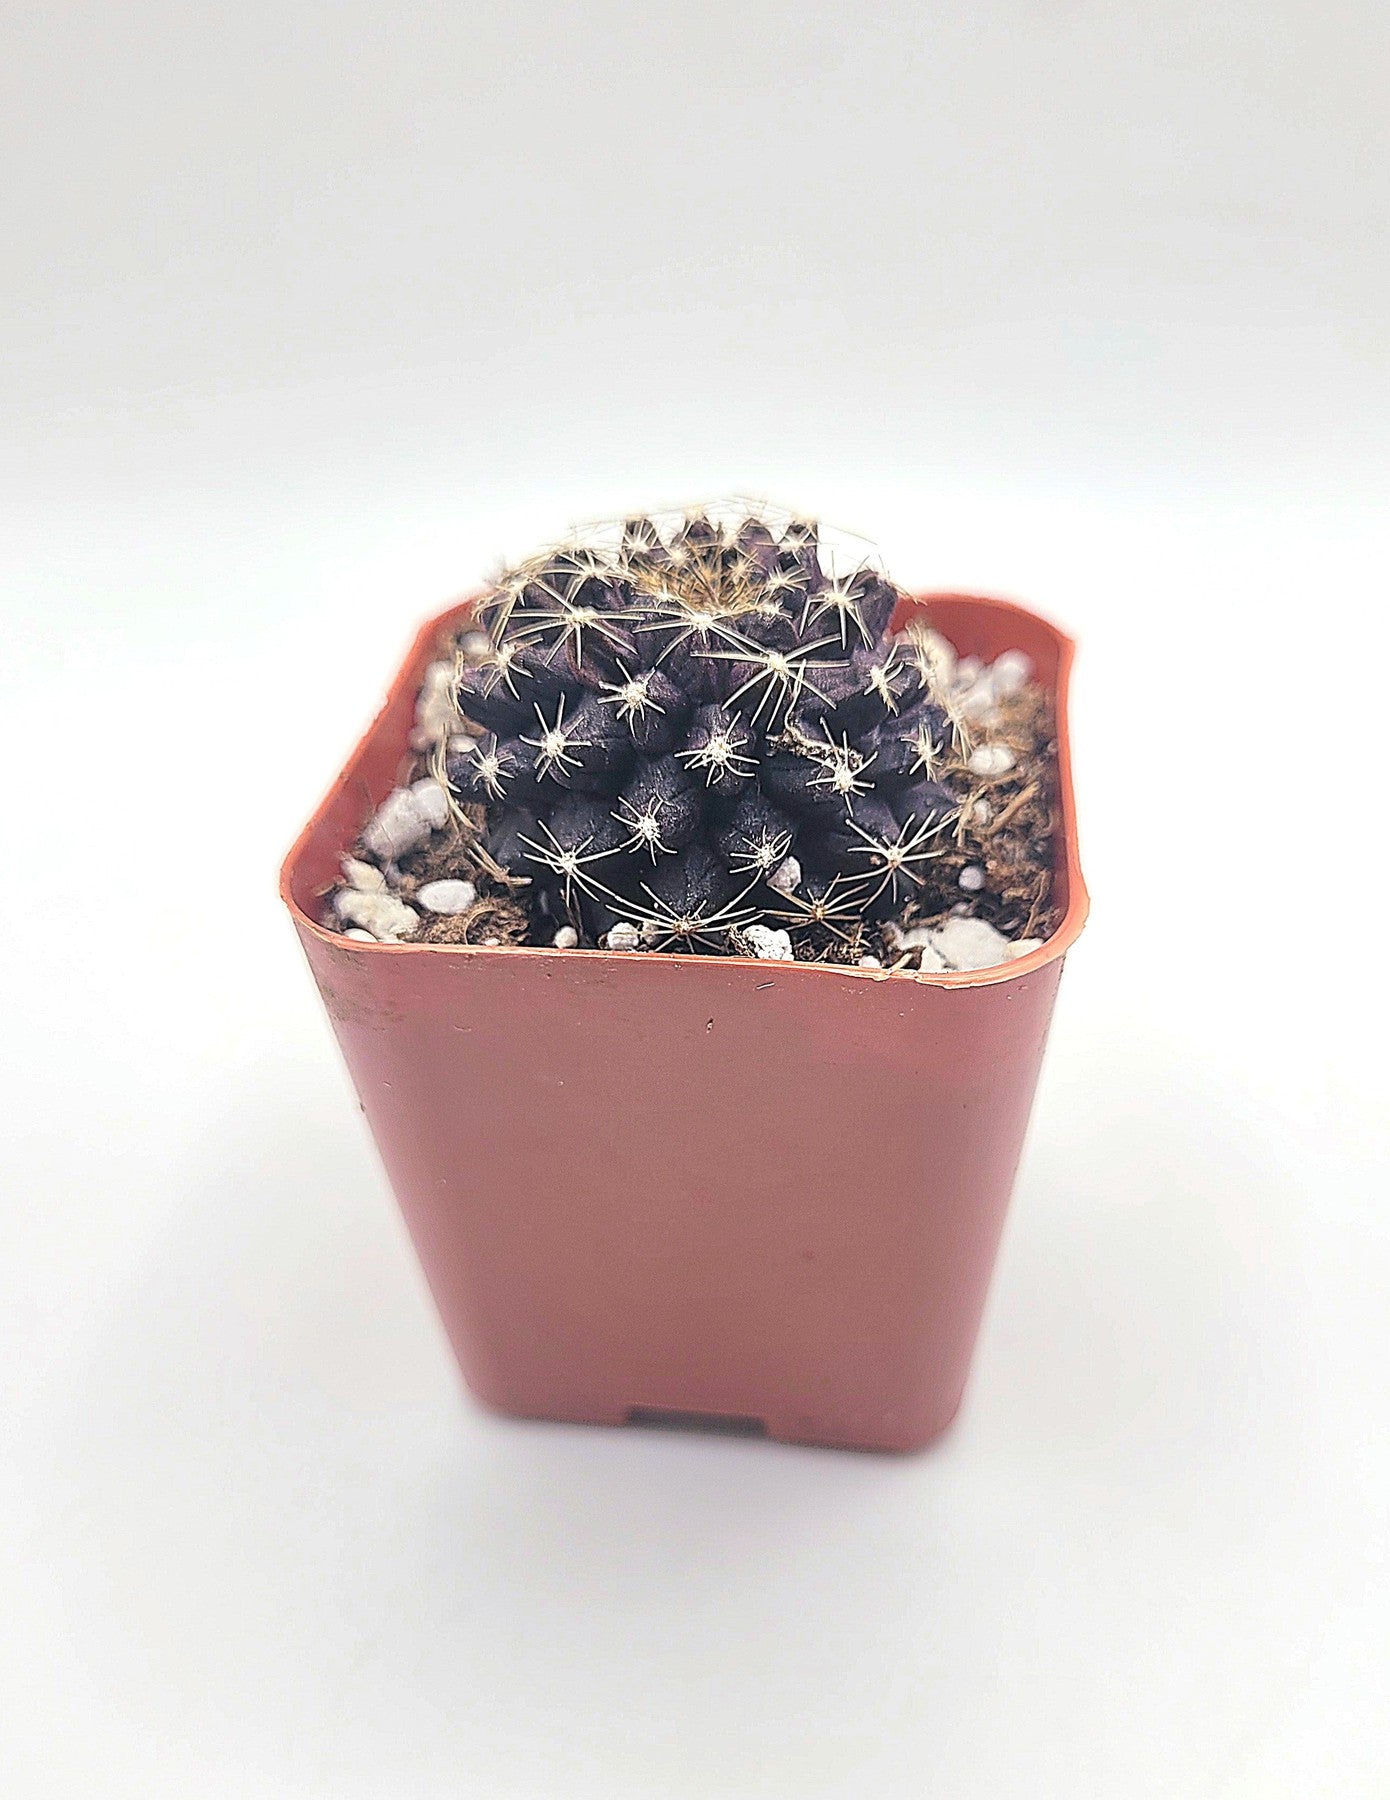 #34c Copiapoa Tenuissima-Cactus - Small - Exact Type-The Succulent Source